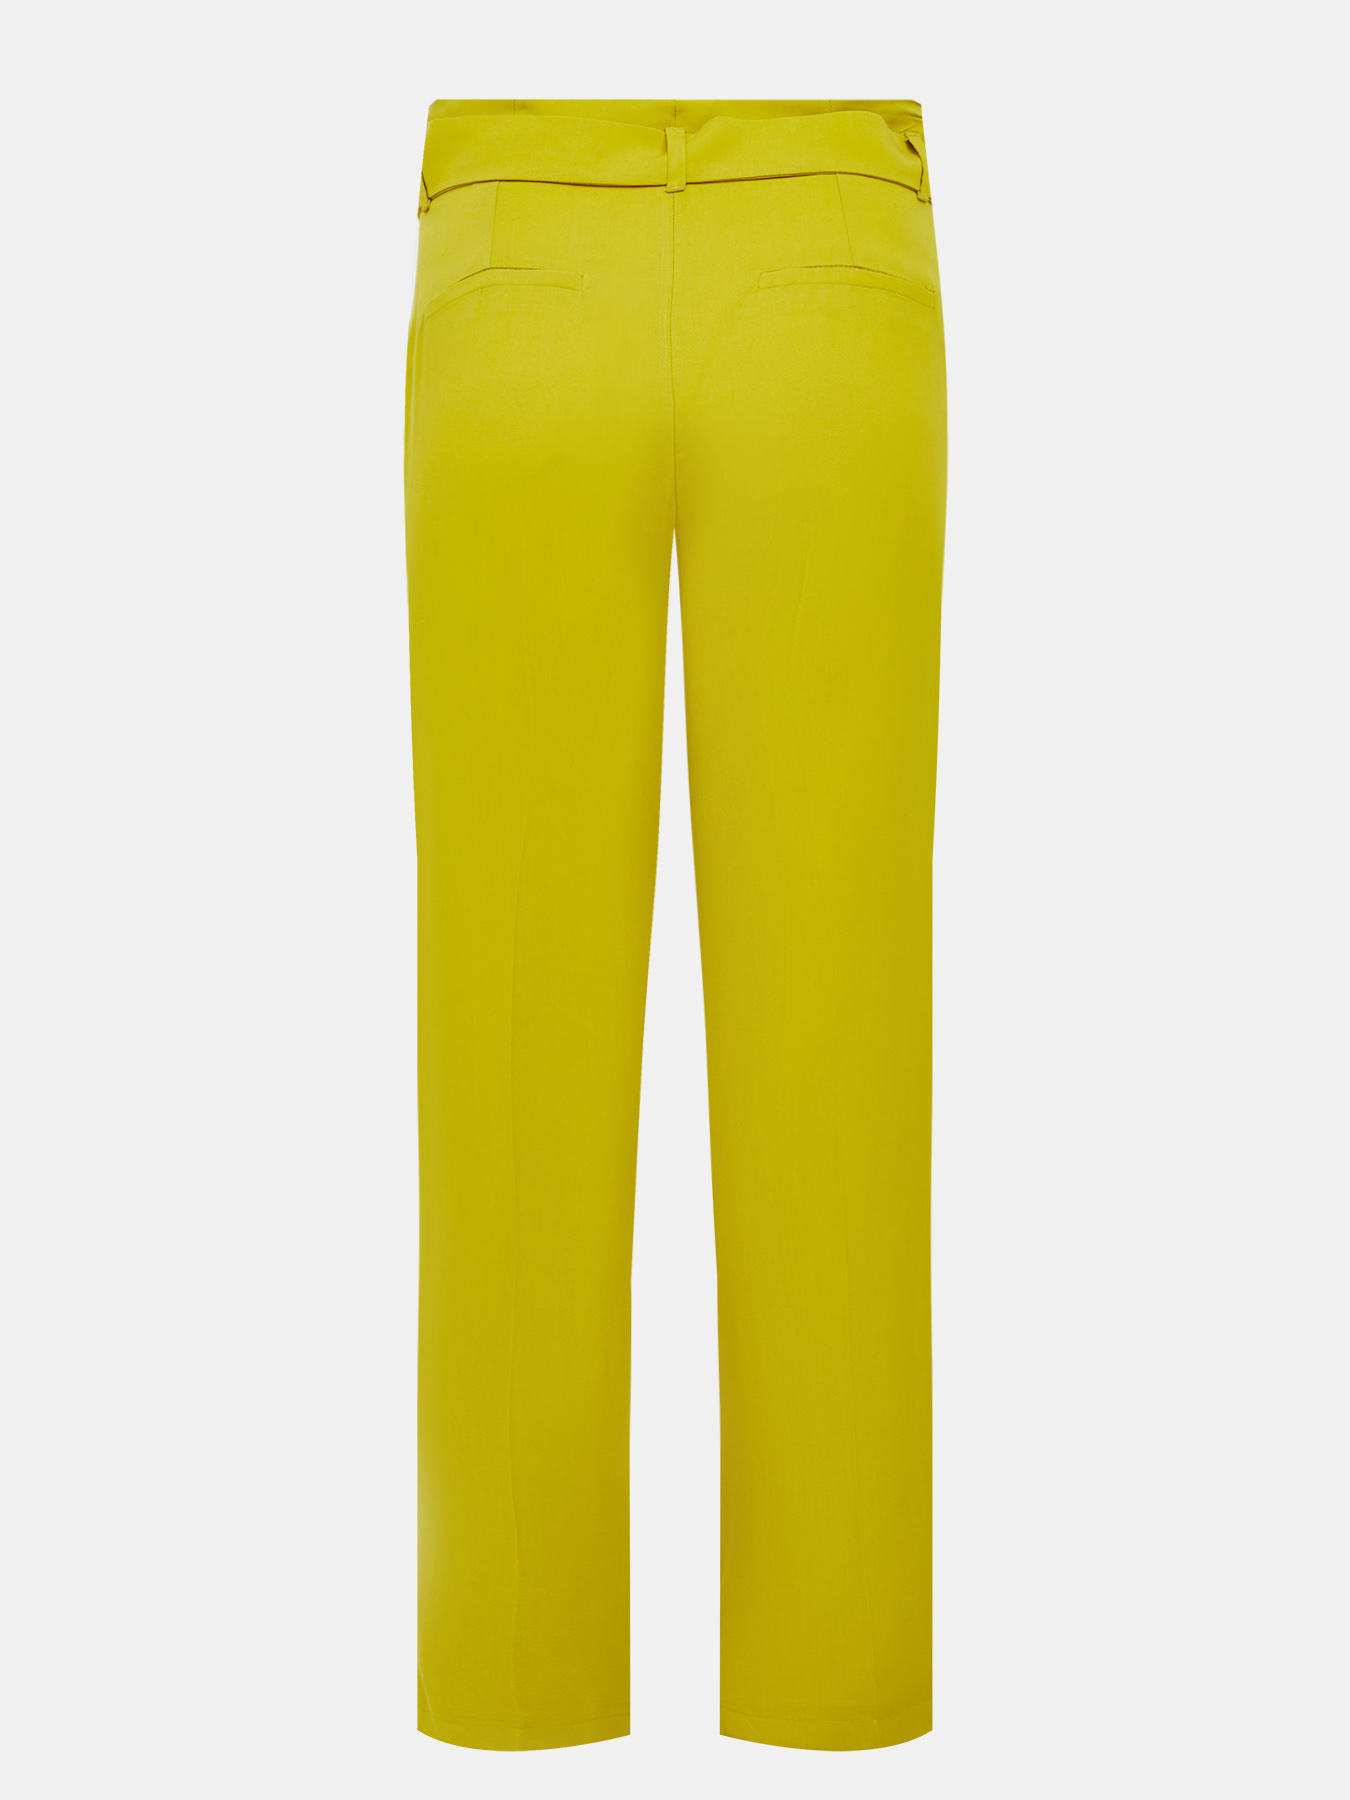 Игра желтые штаны. Желтые брюки. Желтая рюки. Желтые штаны детские. Жёлтые брюки женские.